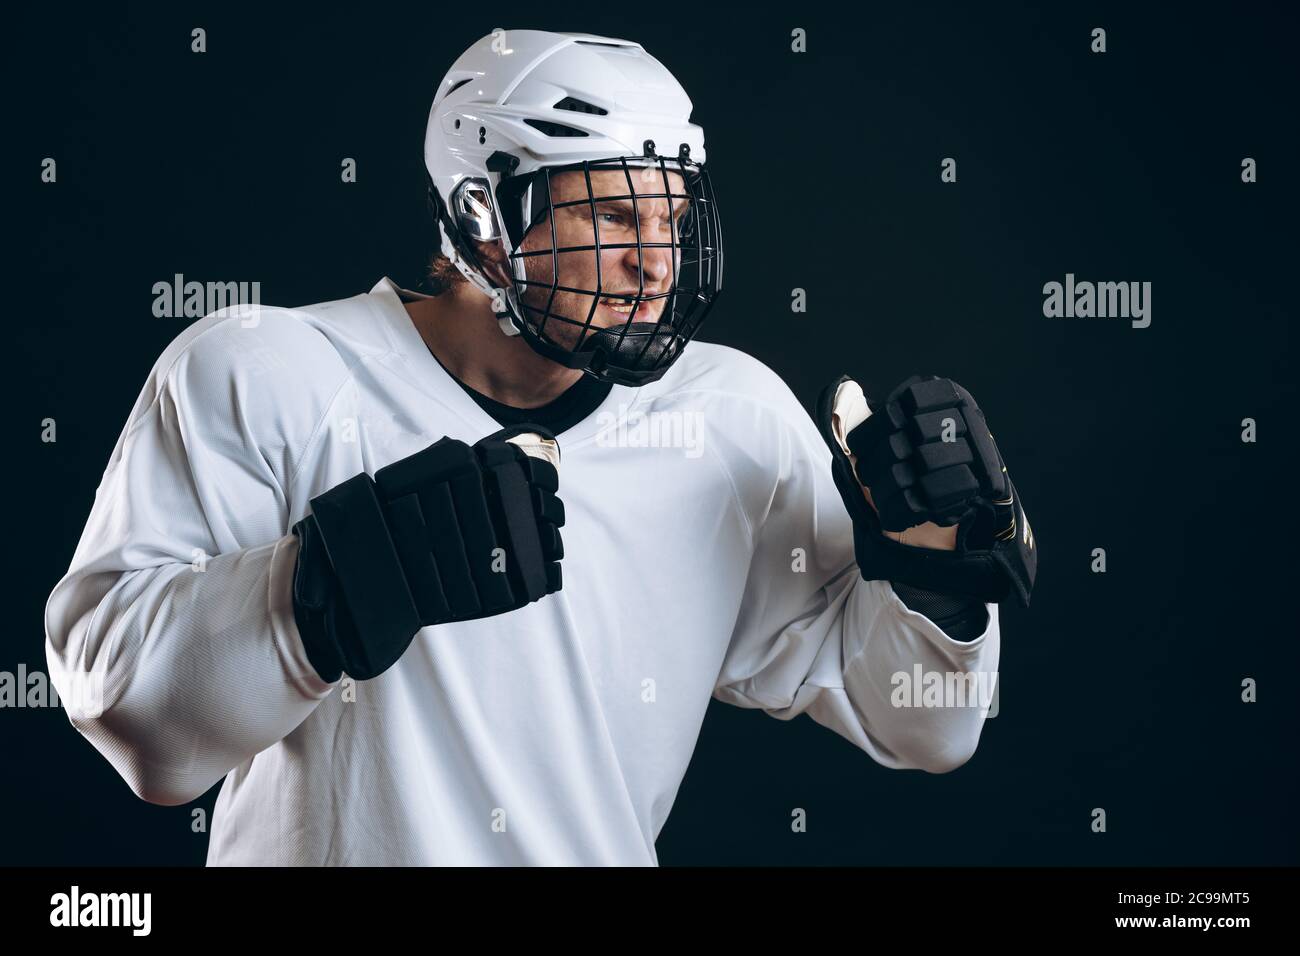 Portrait d'un joueur professionnel de hockey sur glace en vêtements de  sport blancs, debout sur une position défensive, à l'allure féroce, isolé  sur fond noir Photo Stock - Alamy